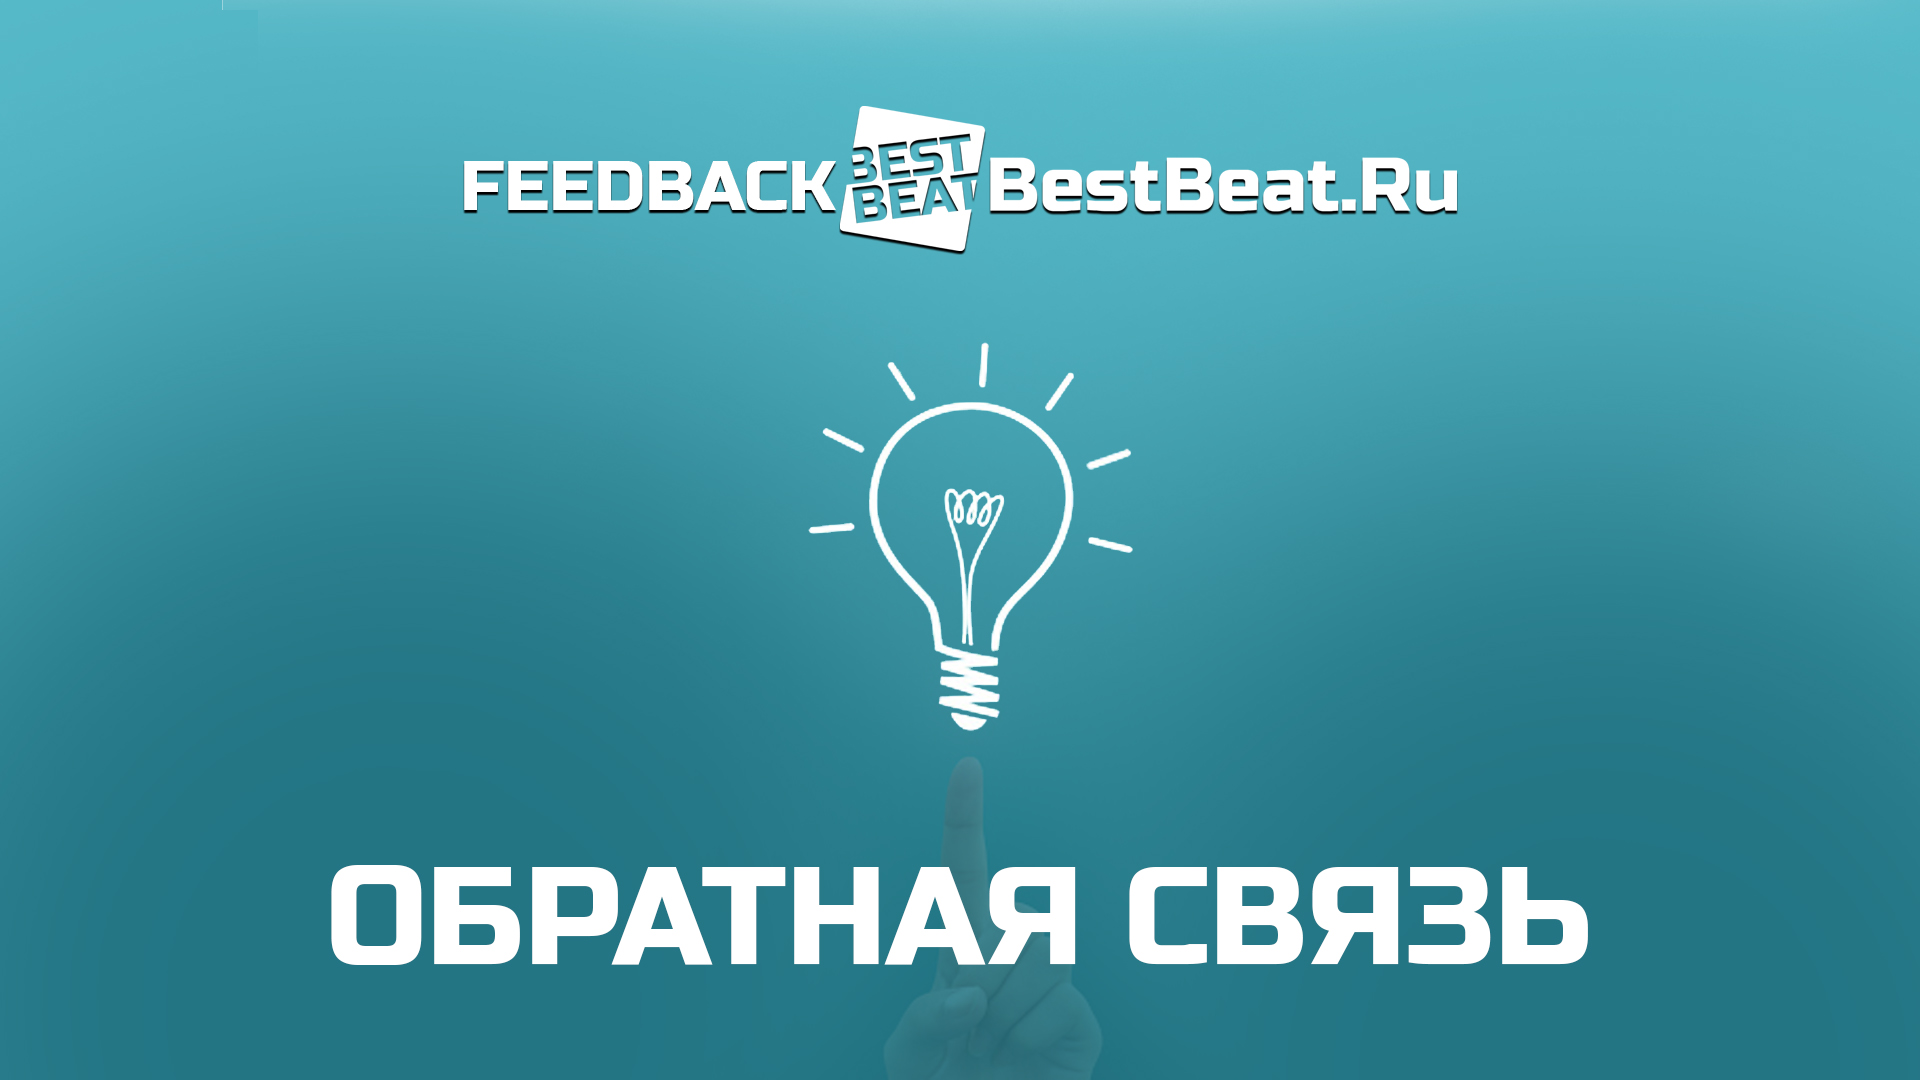 BestBeat.Ru запускает обратную связь!